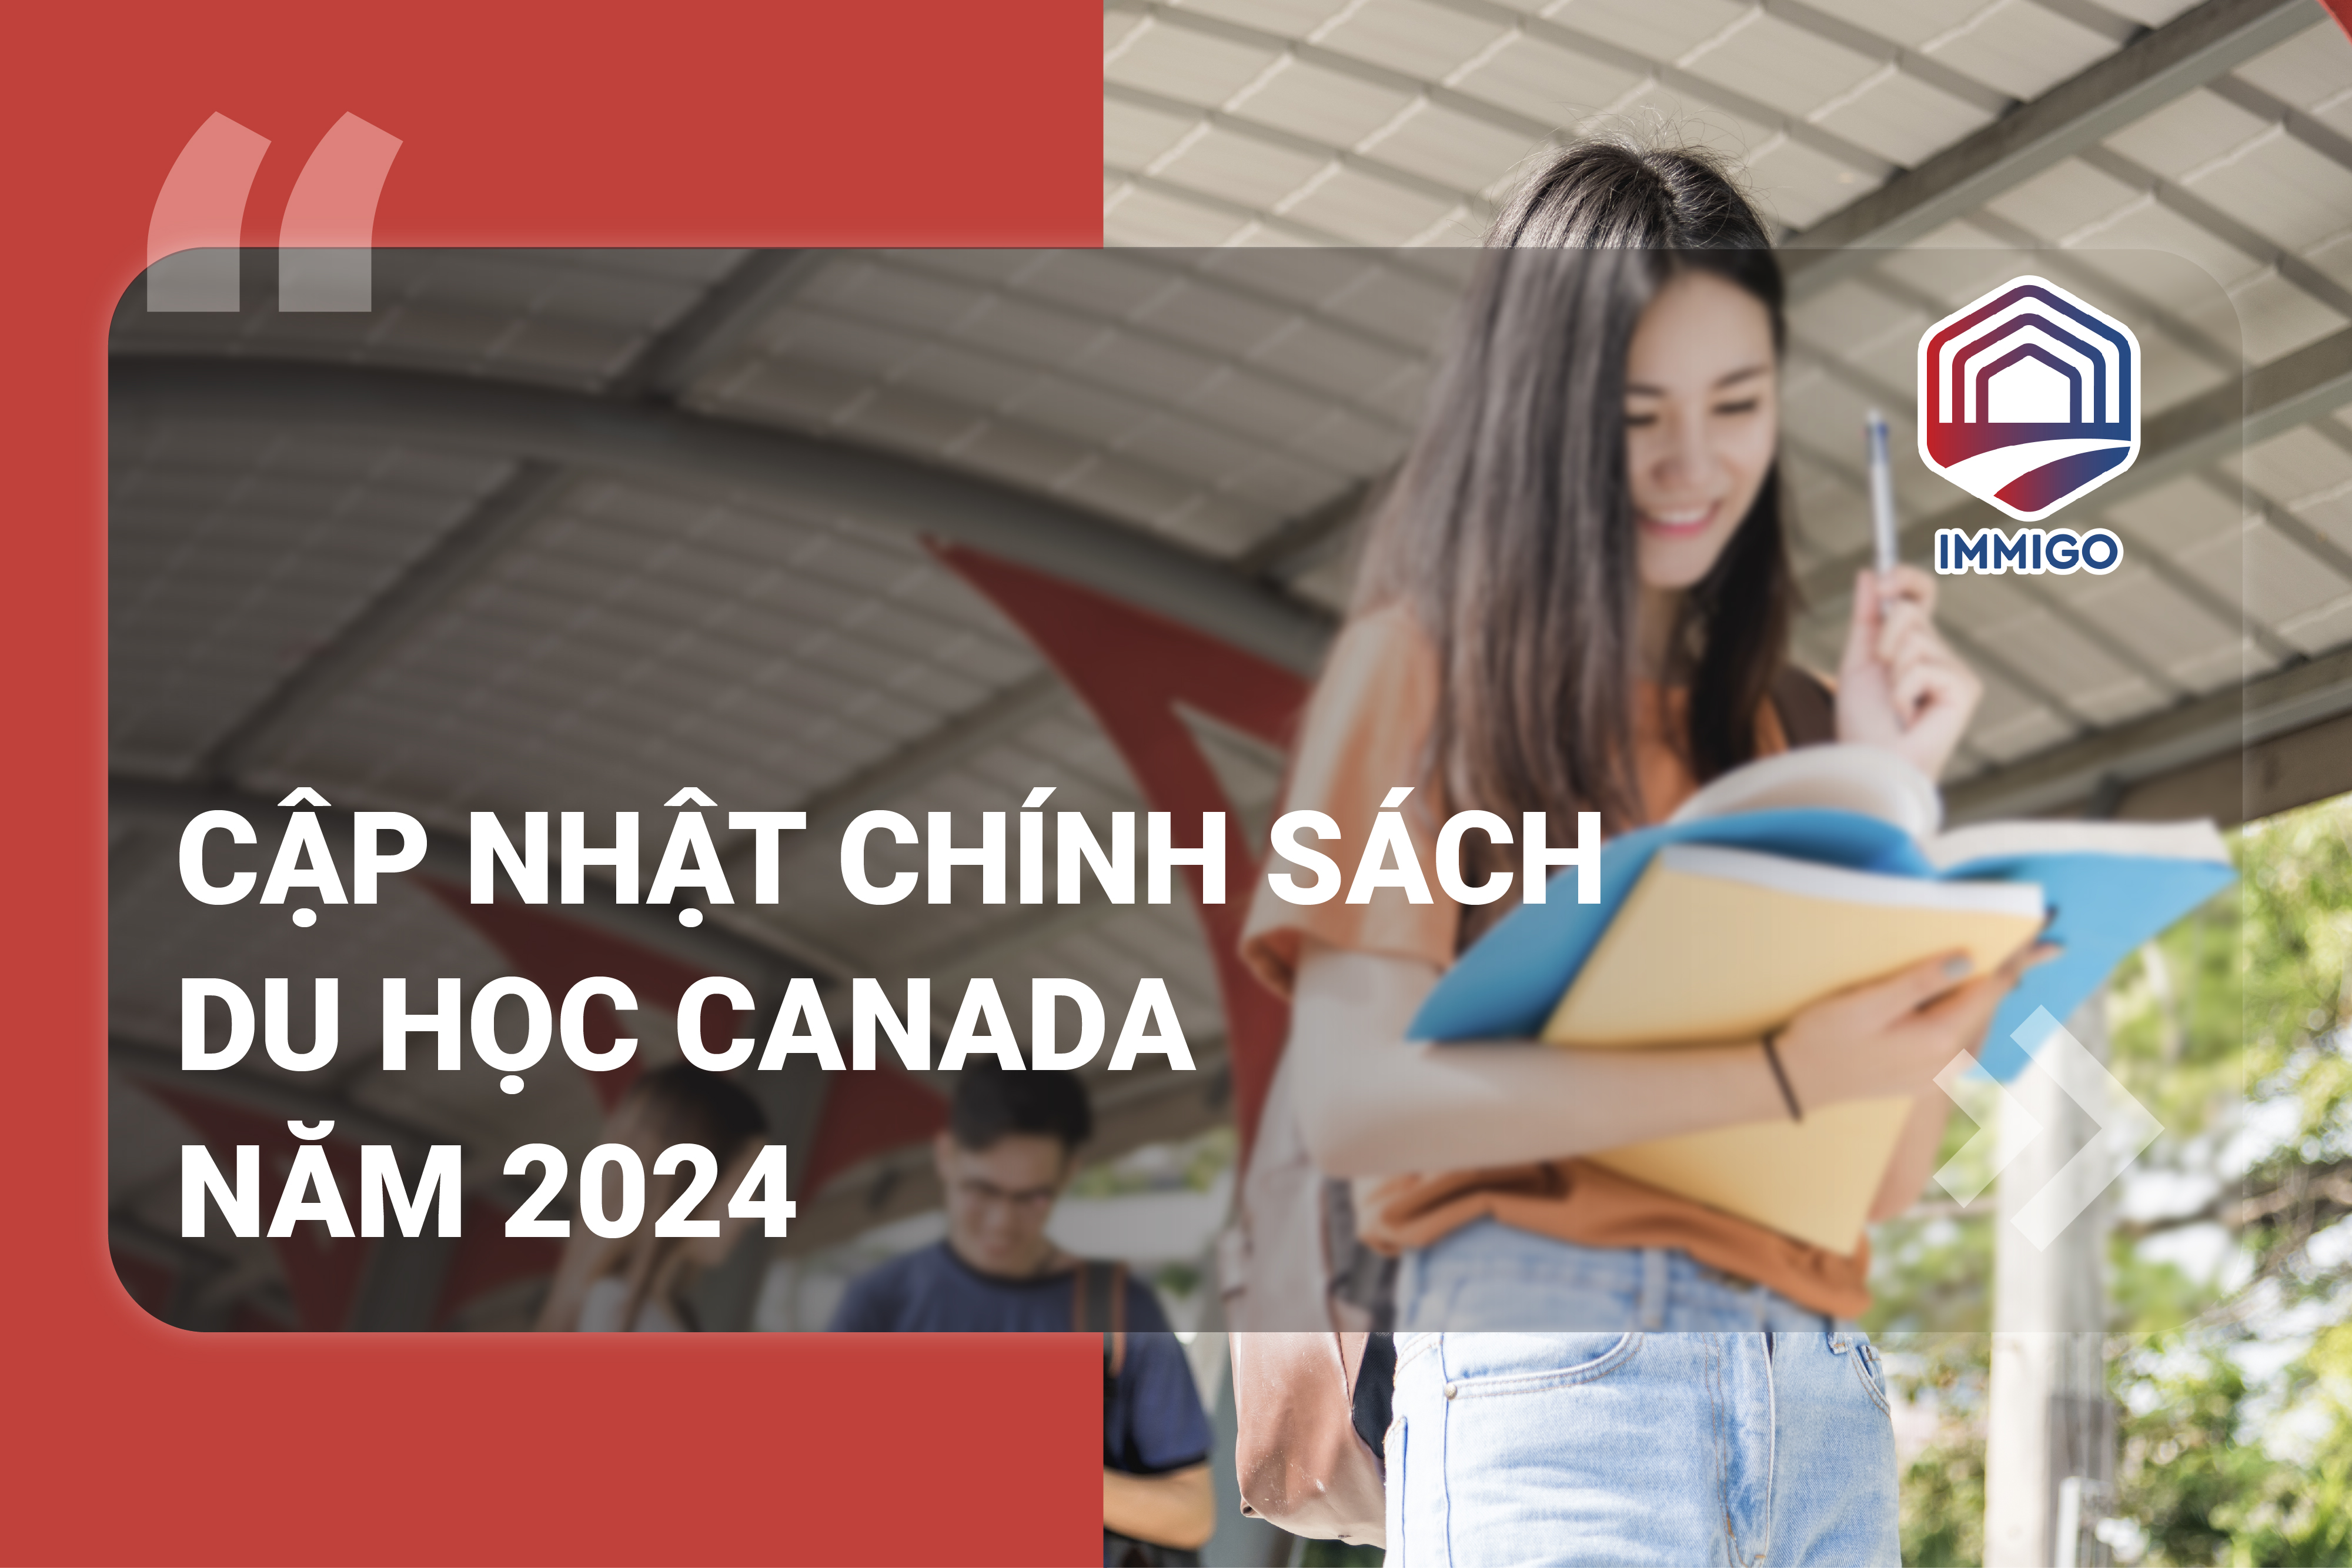 Cập nhật visa du học Canada 2024: Chính phủ ổn định tốc độ tăng trưởng, dự kiến 360.000 giấy phép du học được cấp trong năm